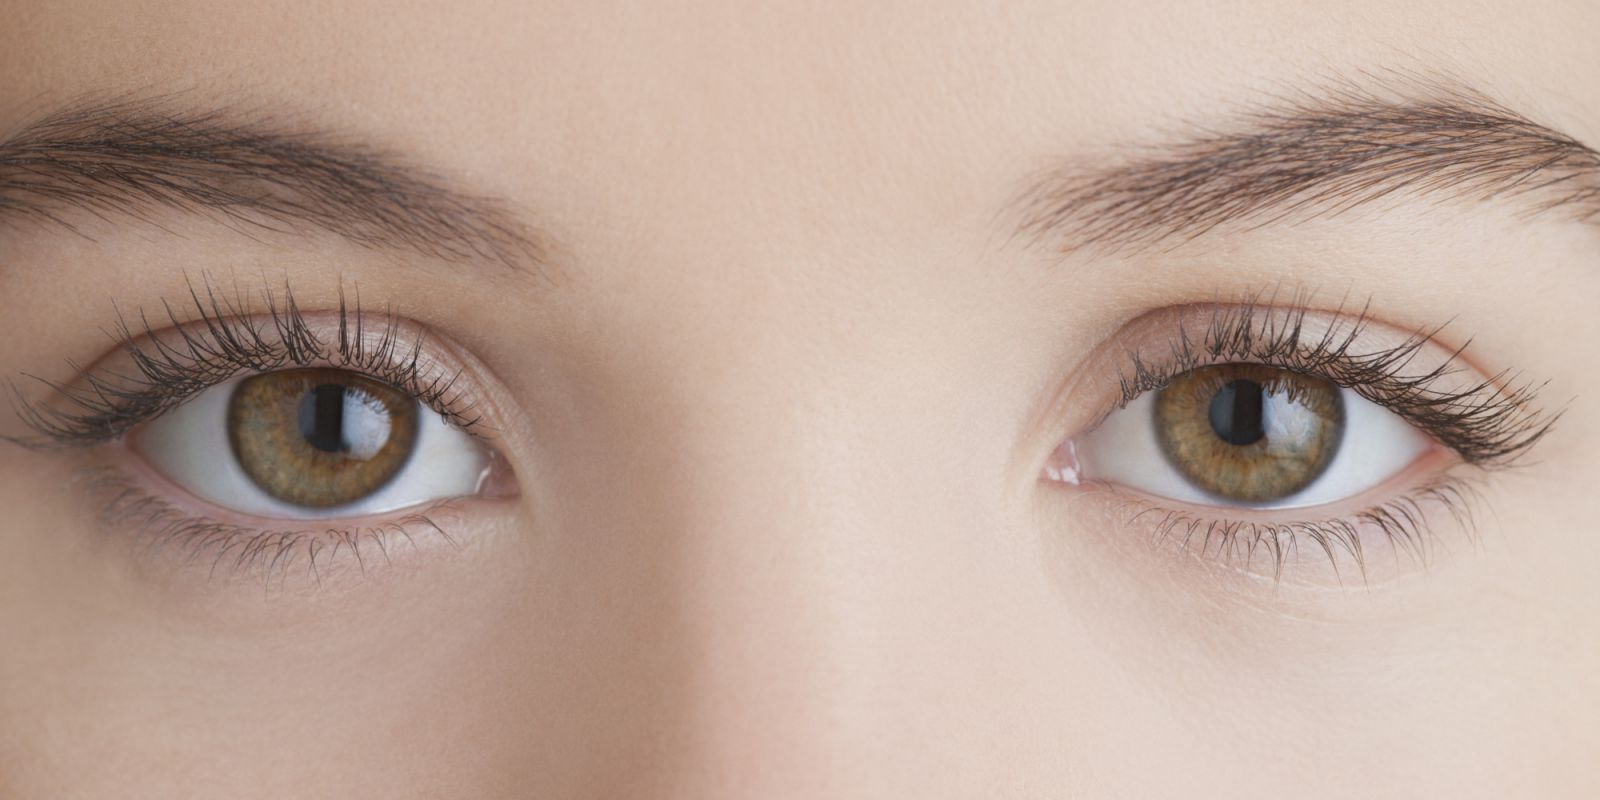 Đoi mắt rát nhạy cảm, vì vậy cần bảo vệ đôi mắt thật kỹ trước các tác nhân gây